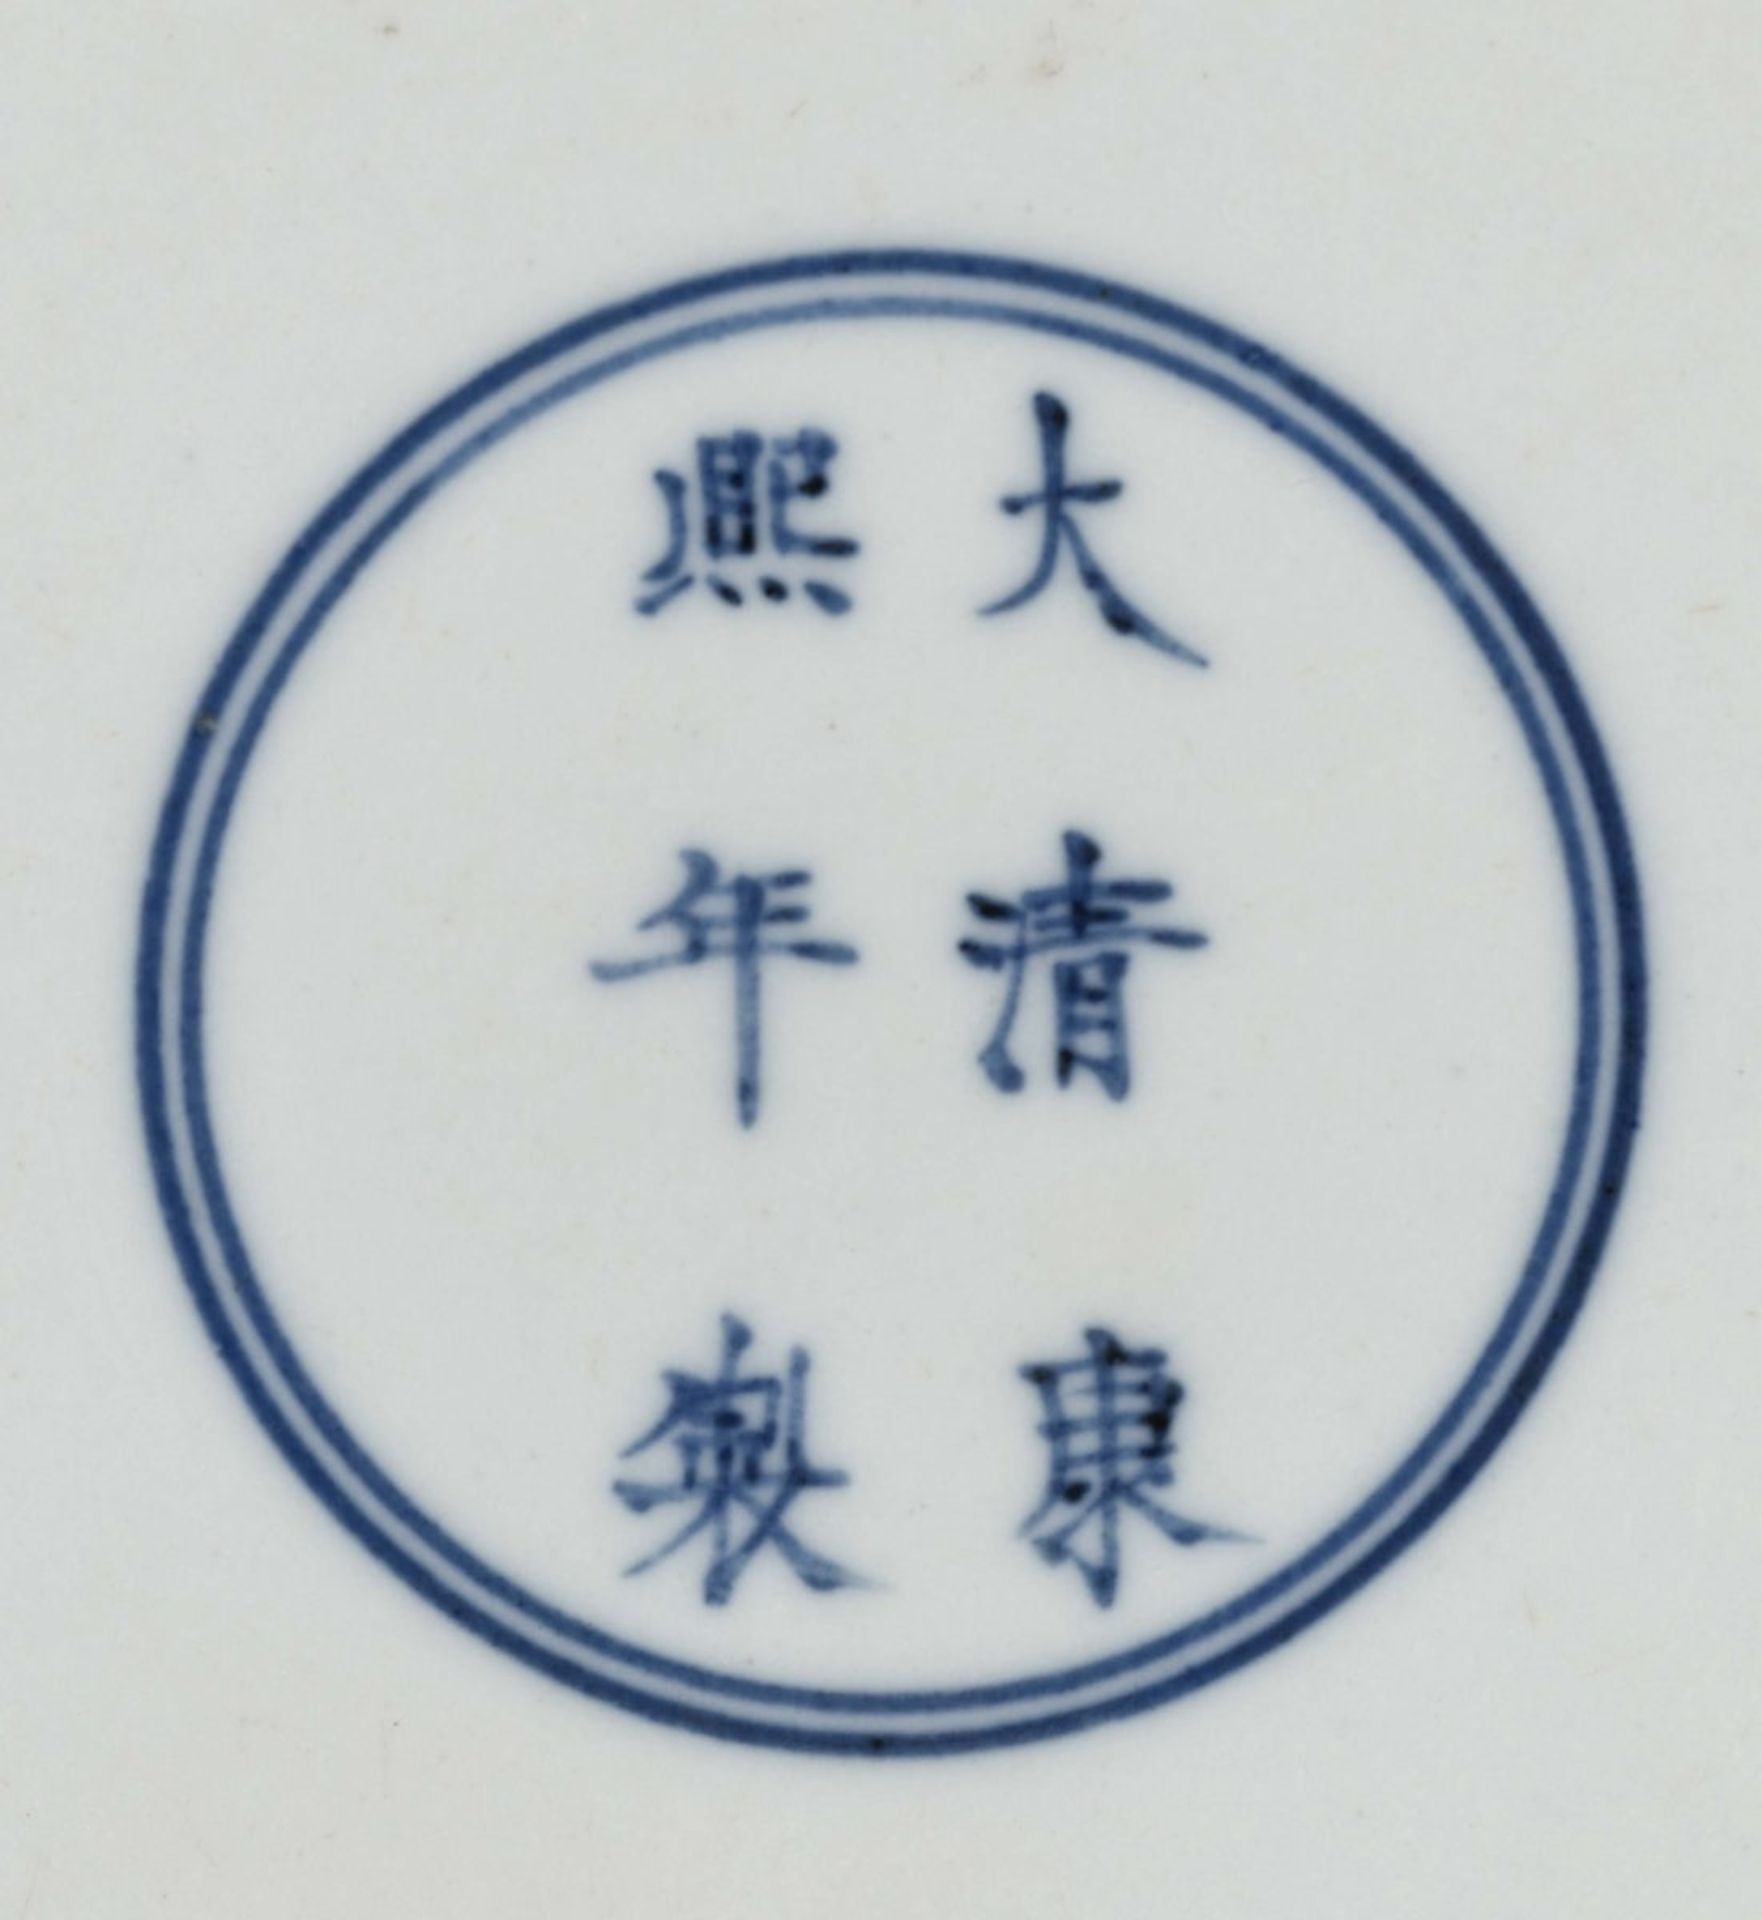 Schale China Porzellan. Bunter Drachendekor im Stil der "Famille verte". Blaue Sechszeichenmarke - Bild 3 aus 3